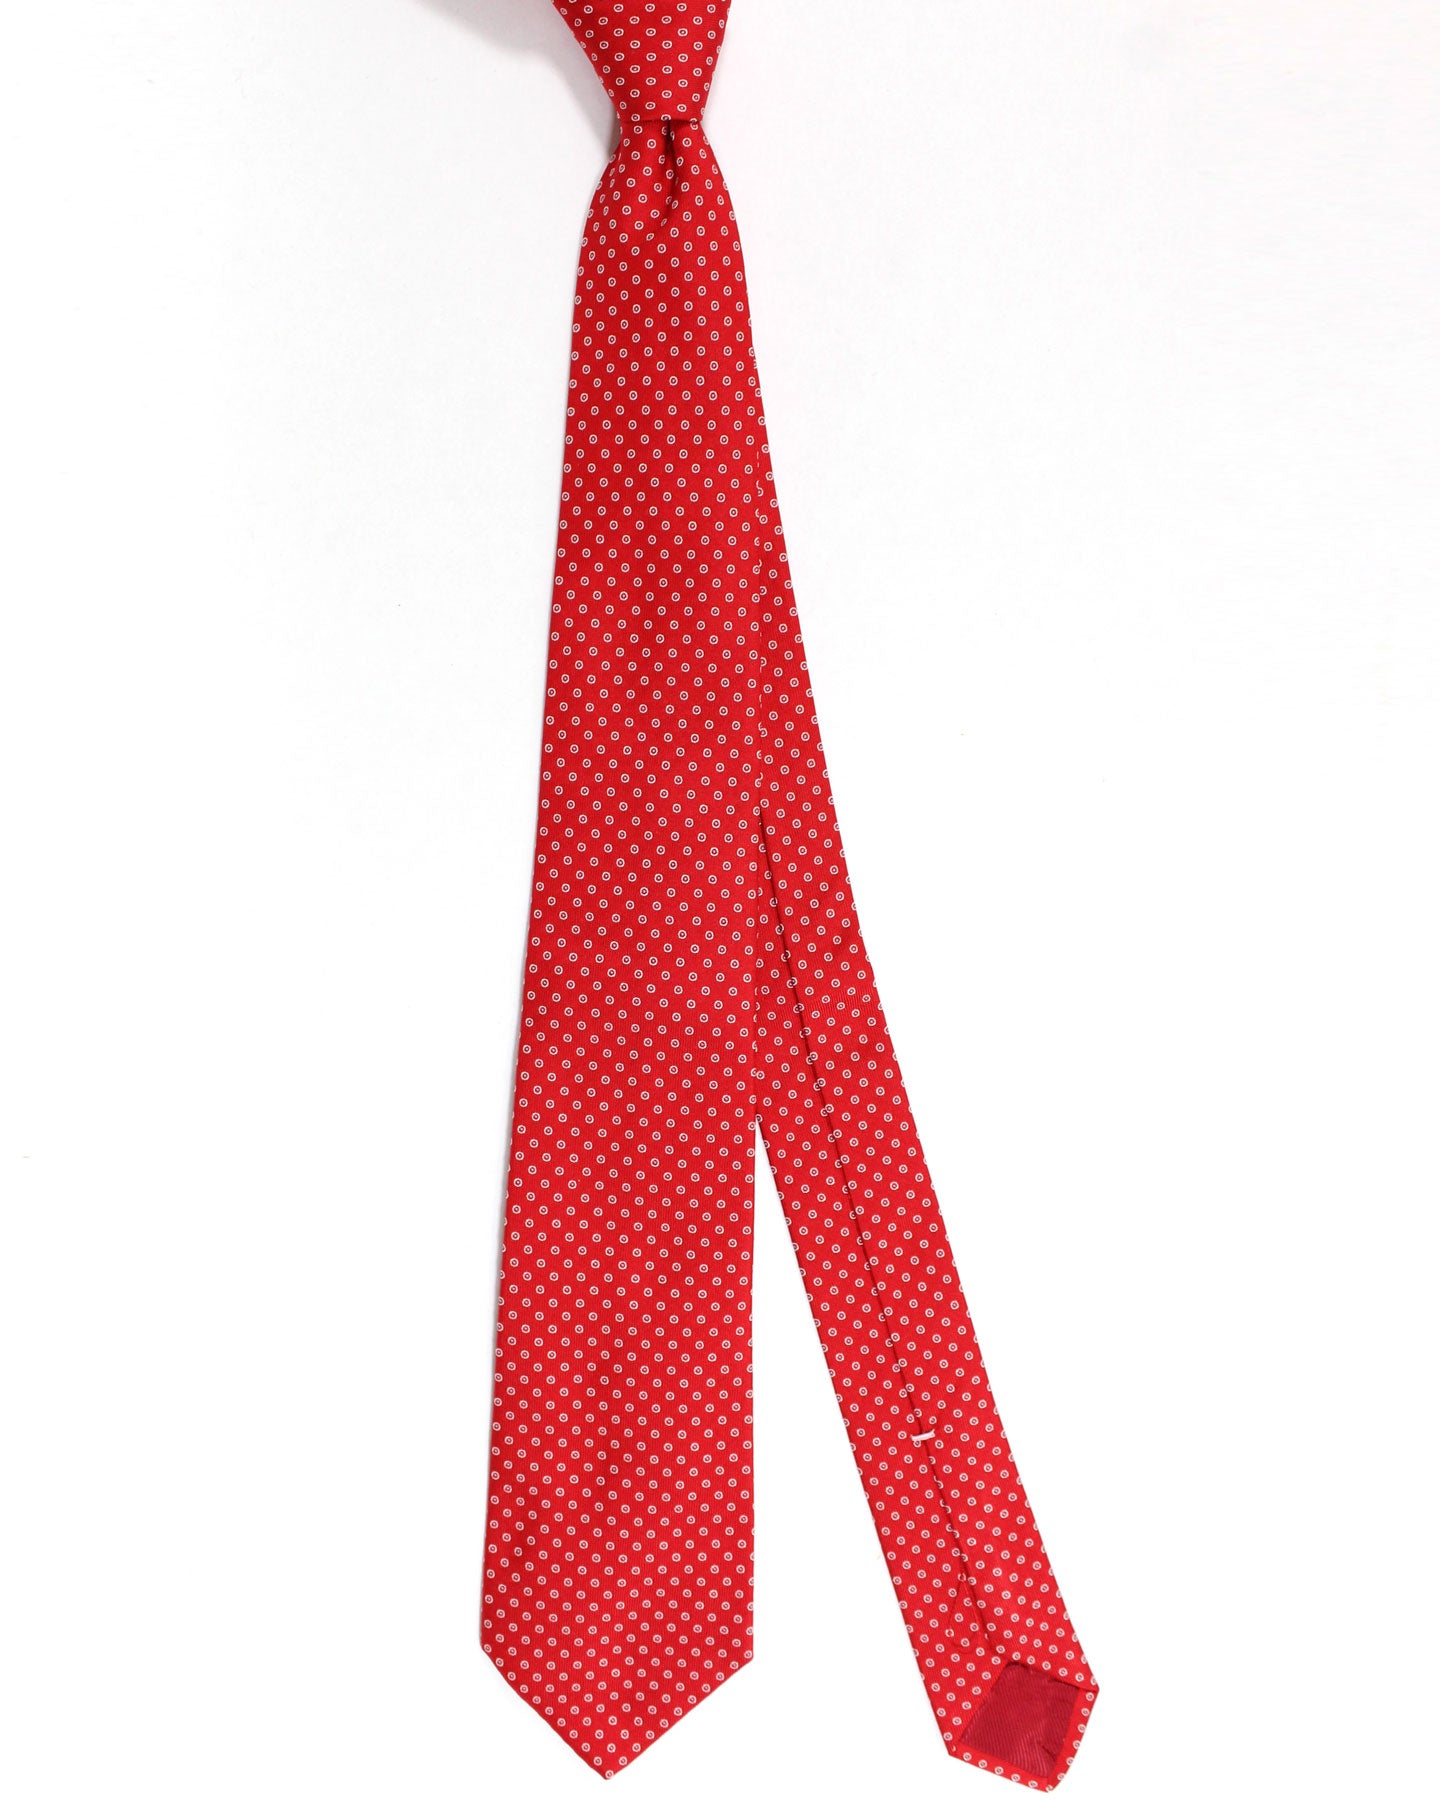 Luigi Borrelli Tie Red Circles Design